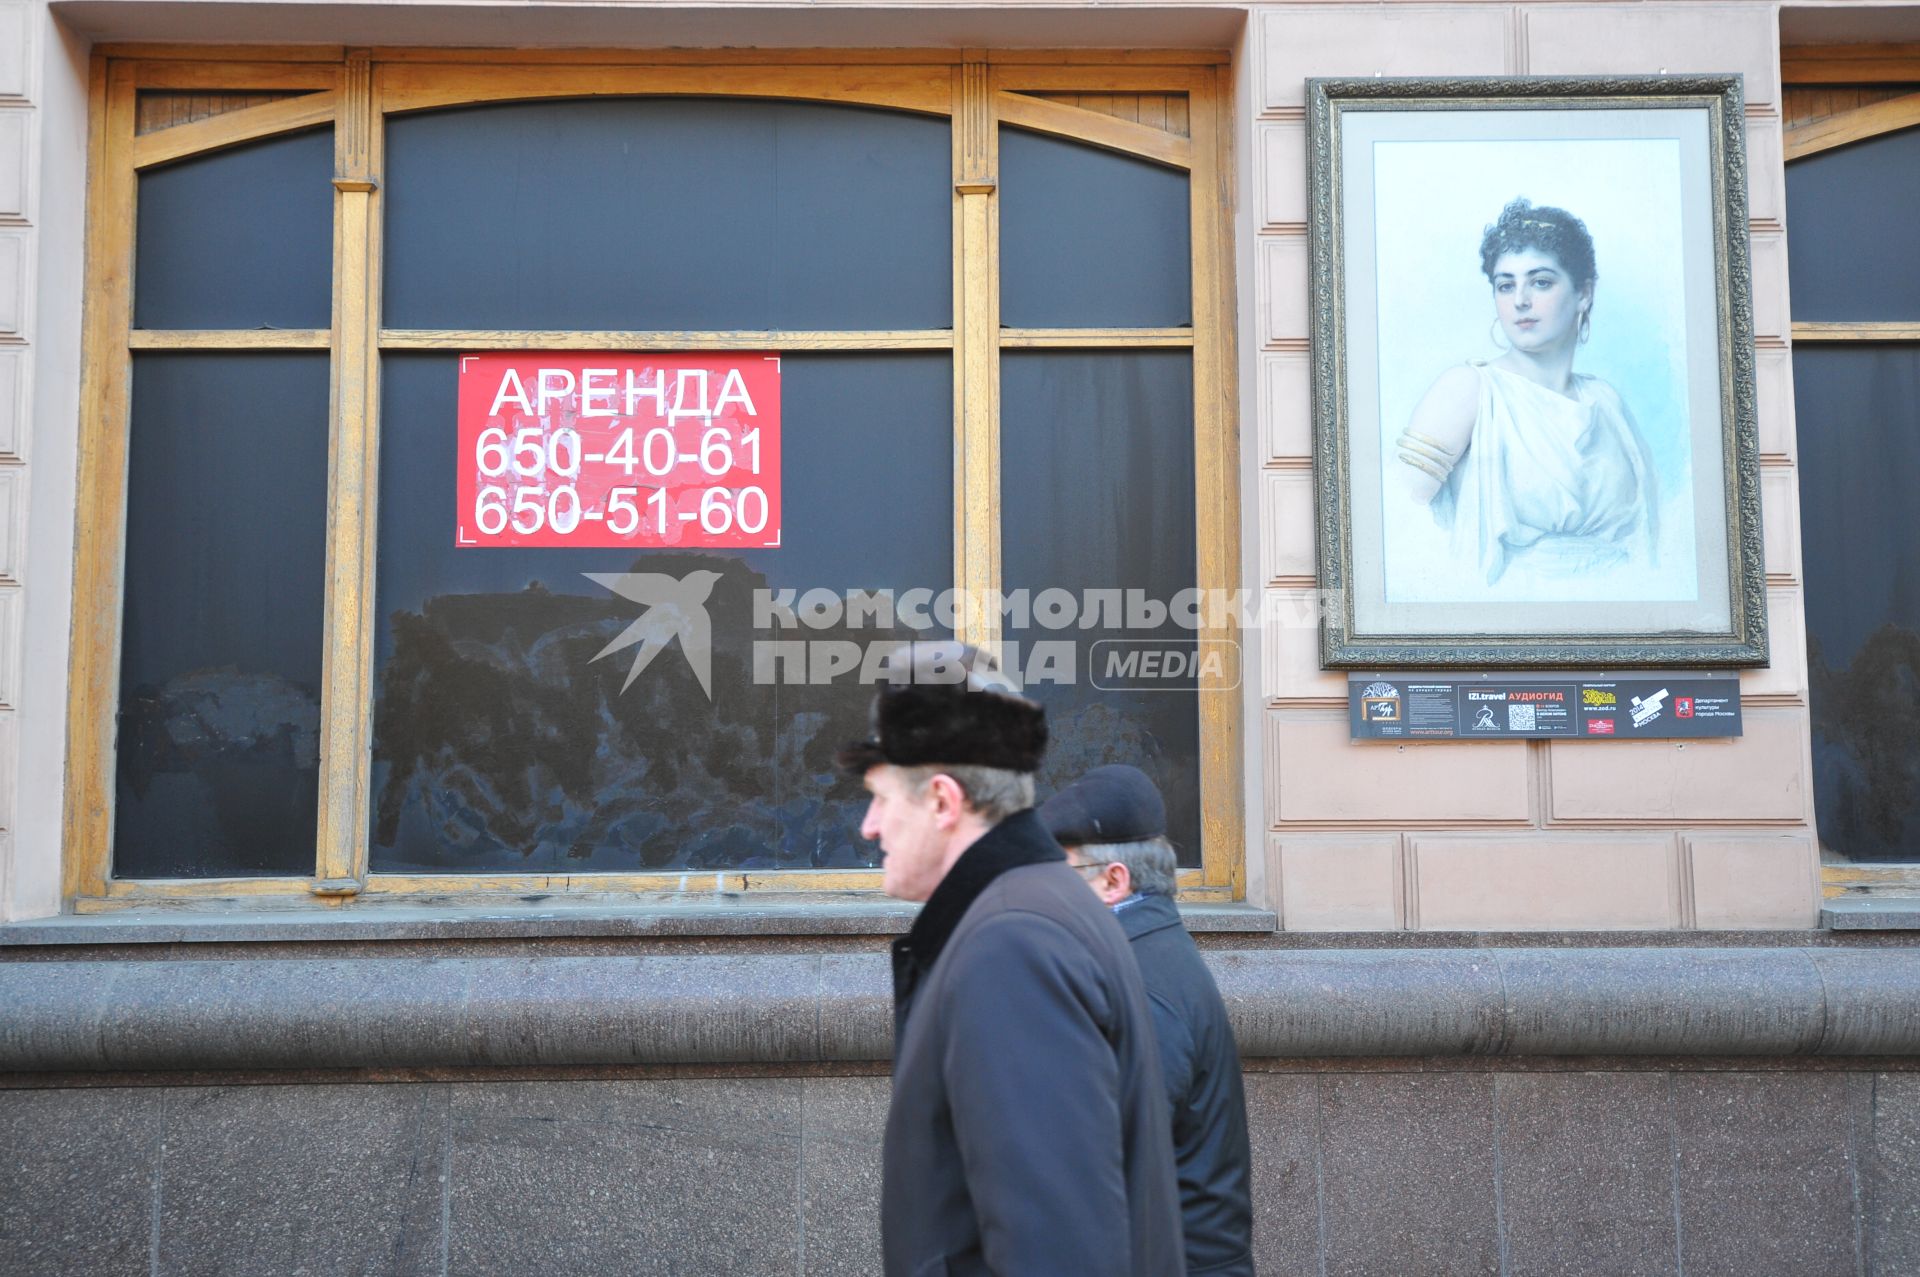 Аренда помещения на  Тверской улице в Москве.